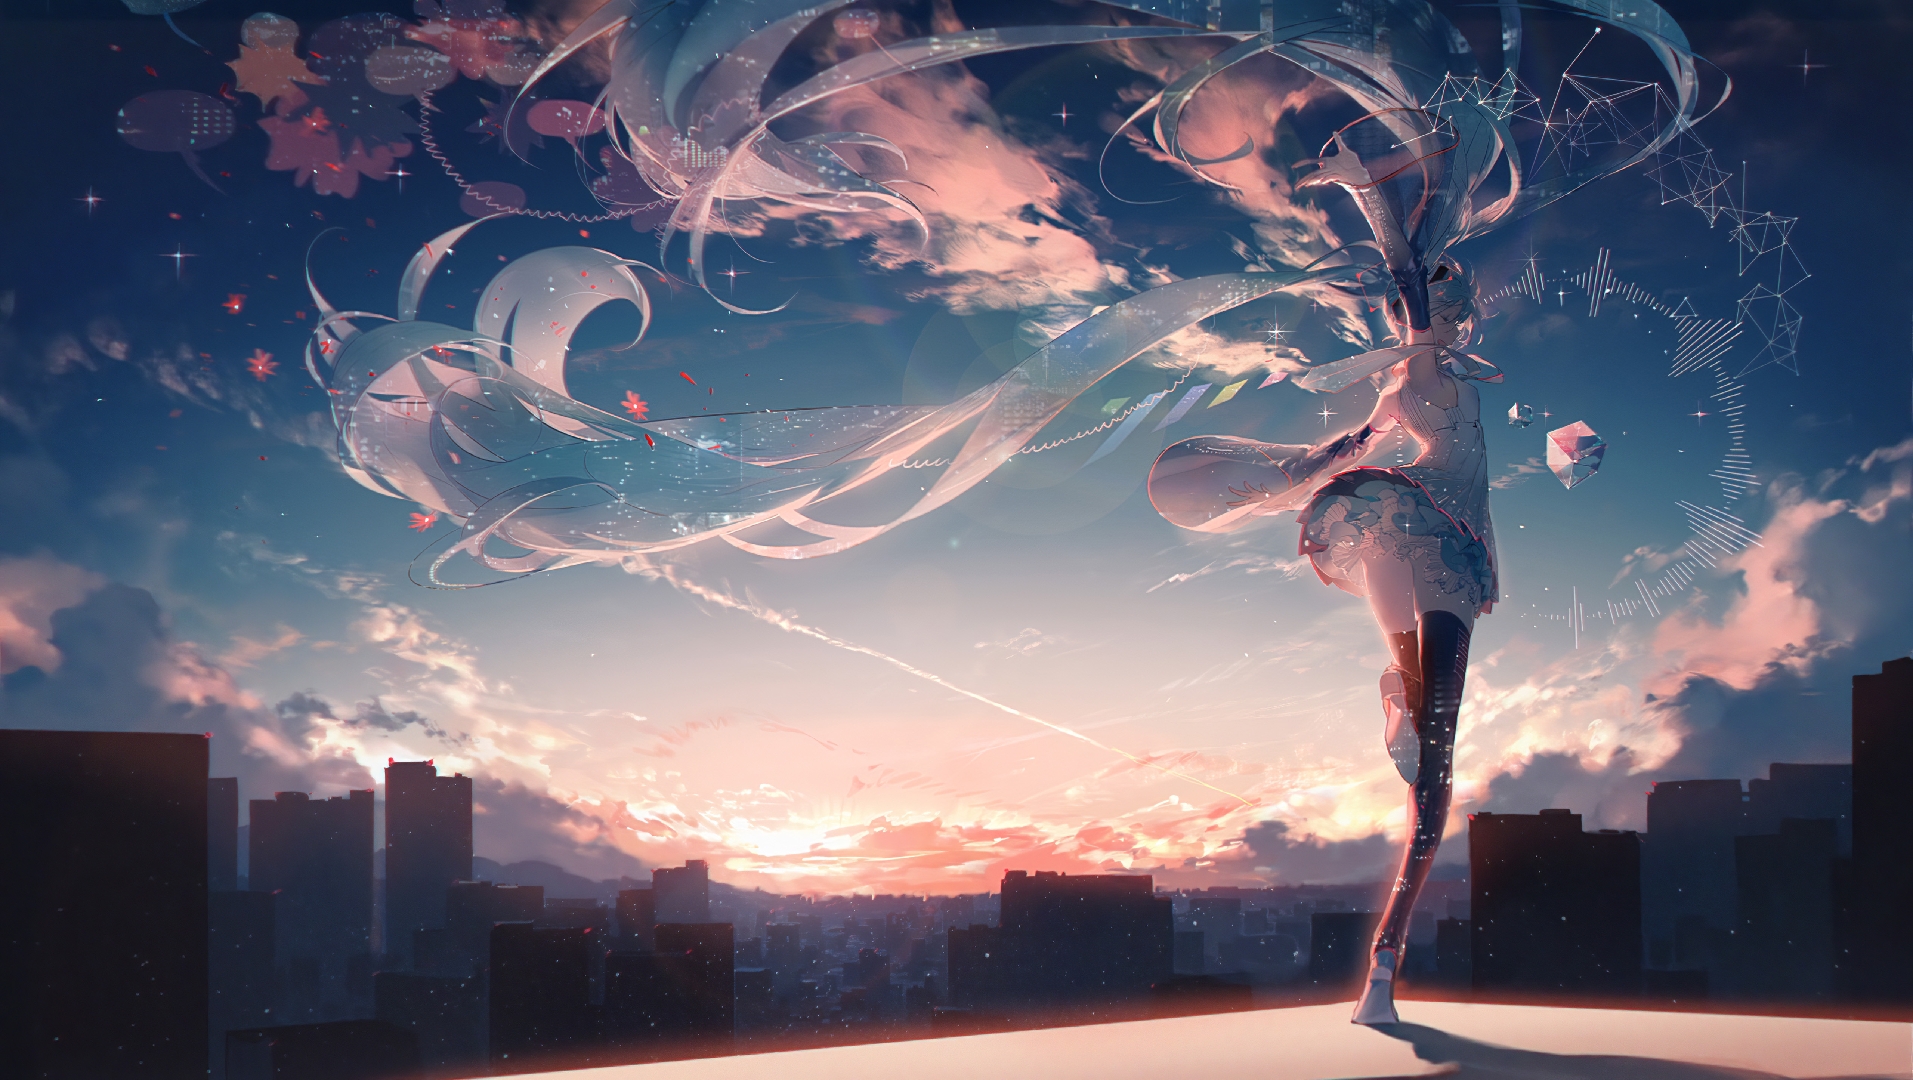 Hatsune Miku Vocaloid Sky Long Hair Dancing Building Anime Girls Clouds Sunset Sunset Glow Sunlight  1913x1080